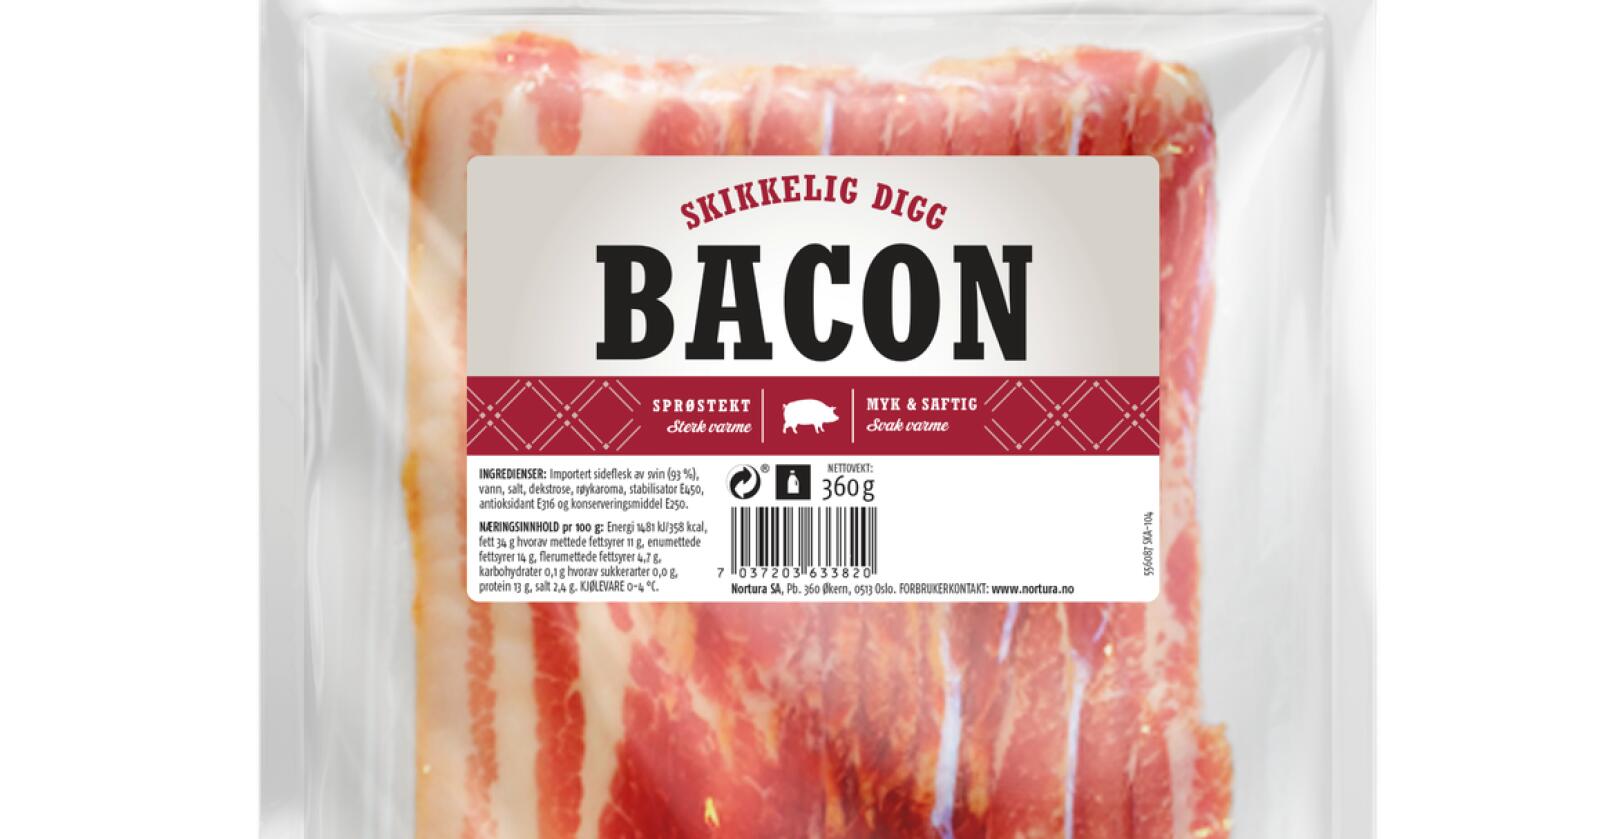 Nortura utvider tilbakekalling av baconet med navn «Skikkelig digg bacon» til å gjelde flere holdbarhetsdatoer. Foto: Nortura SA